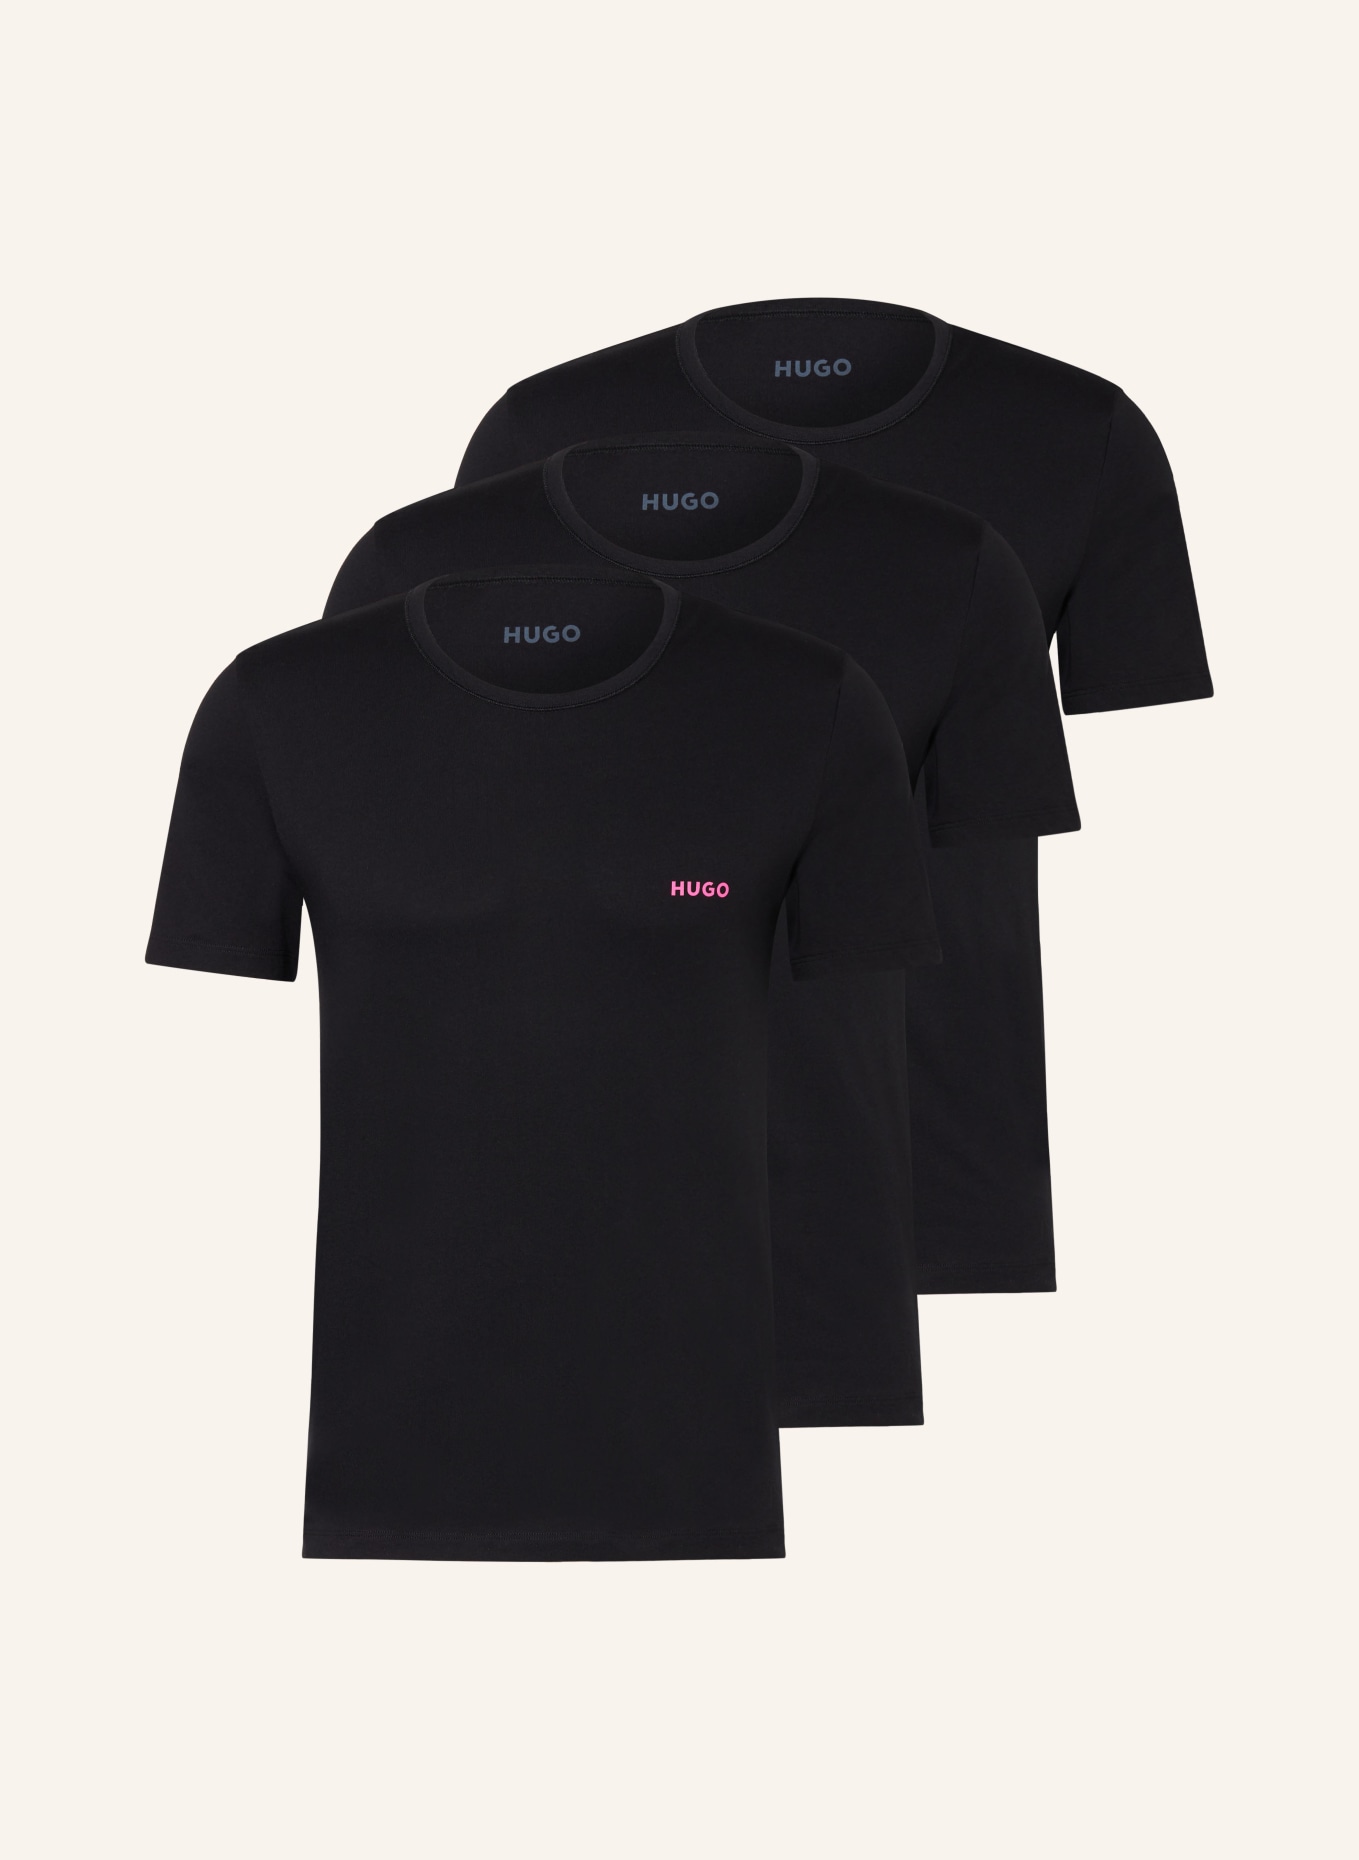 HUGO 3-pack T-shirts, Color: BLACK (Image 1)